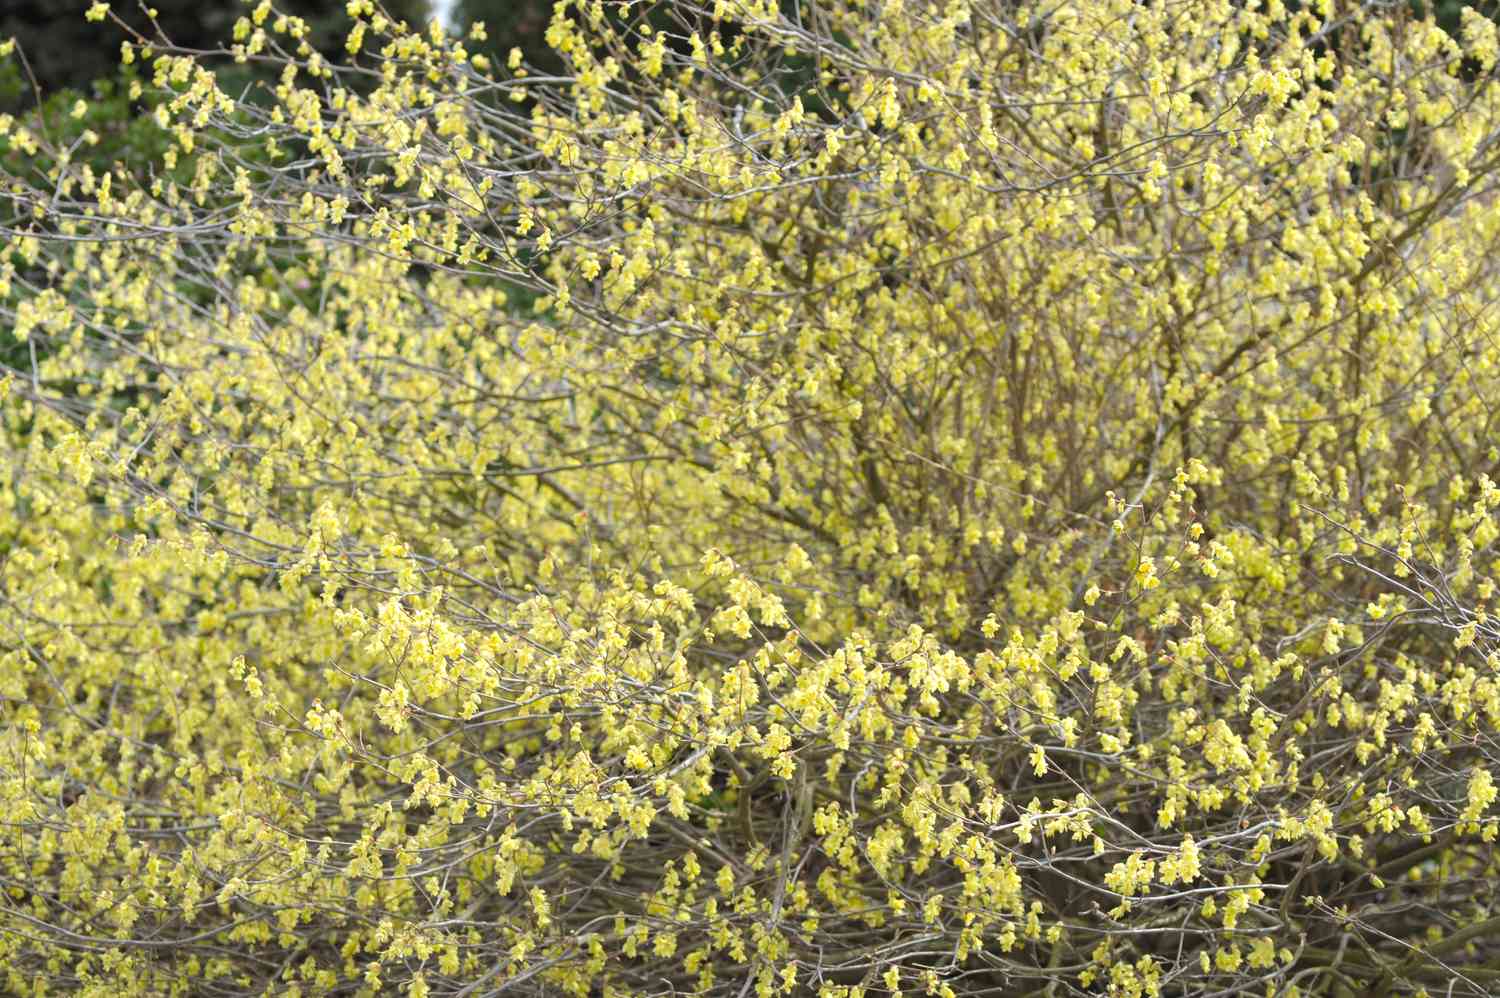 Arbusto de avellano de invierno con largas ramas con pequeñas flores amarillo pálido